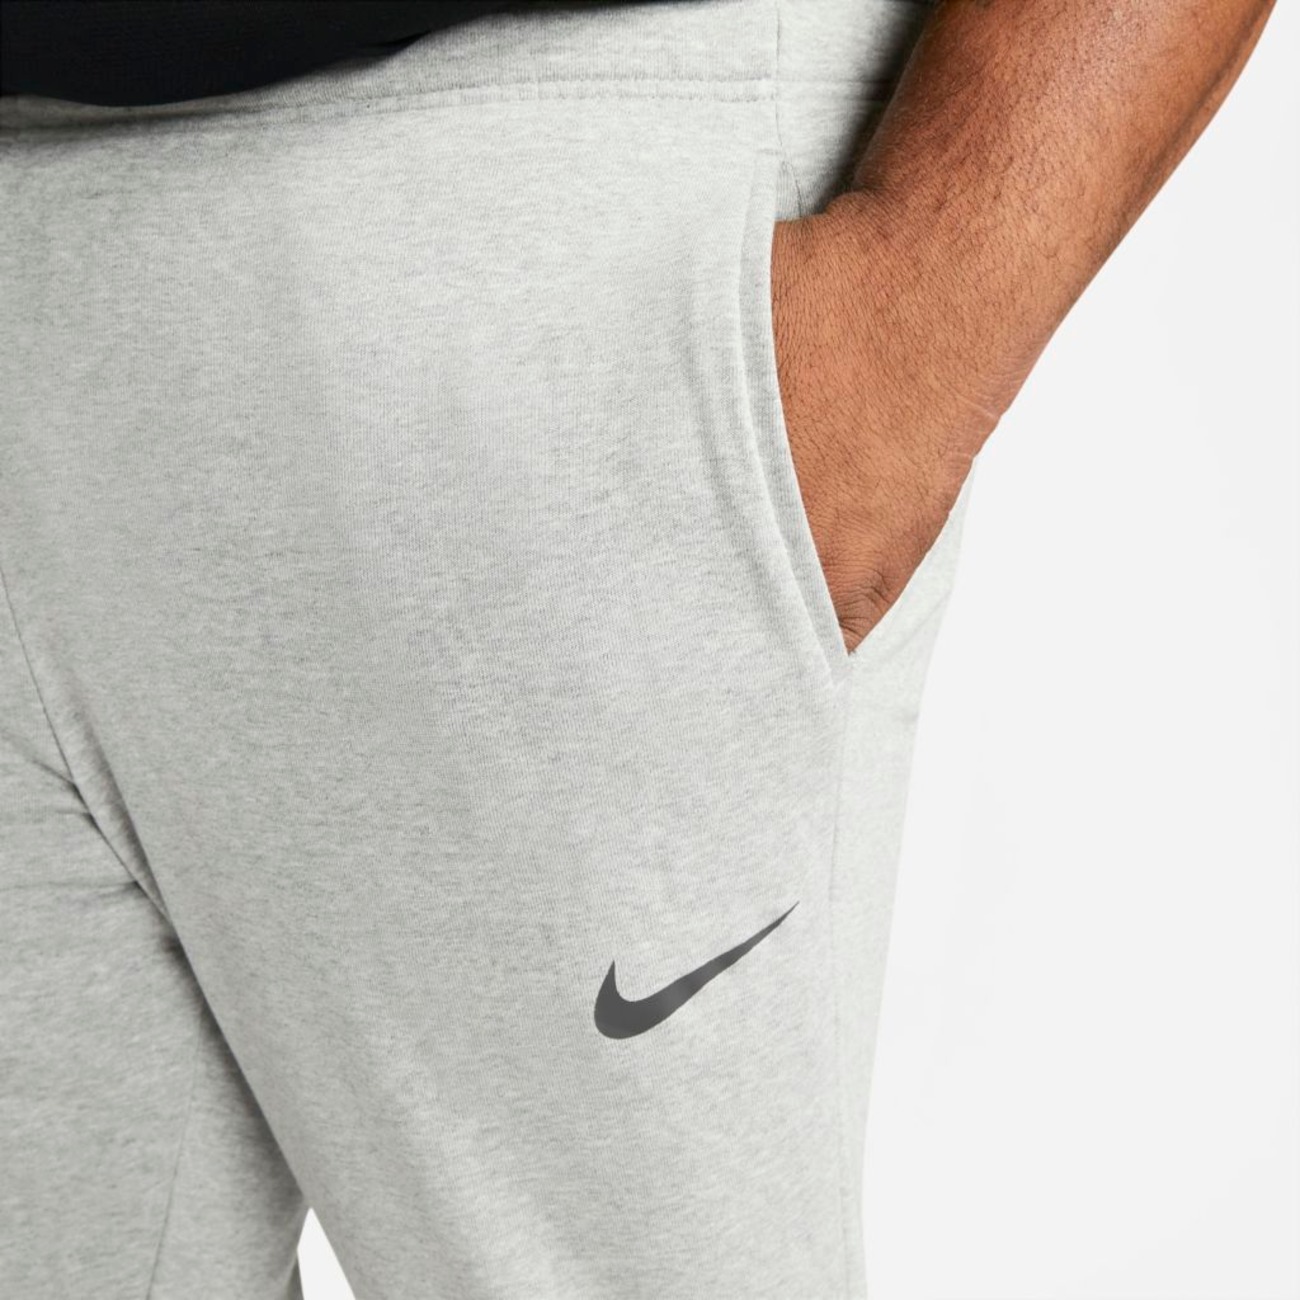 Calça Nike Dri-FIT Masculina - Foto 12